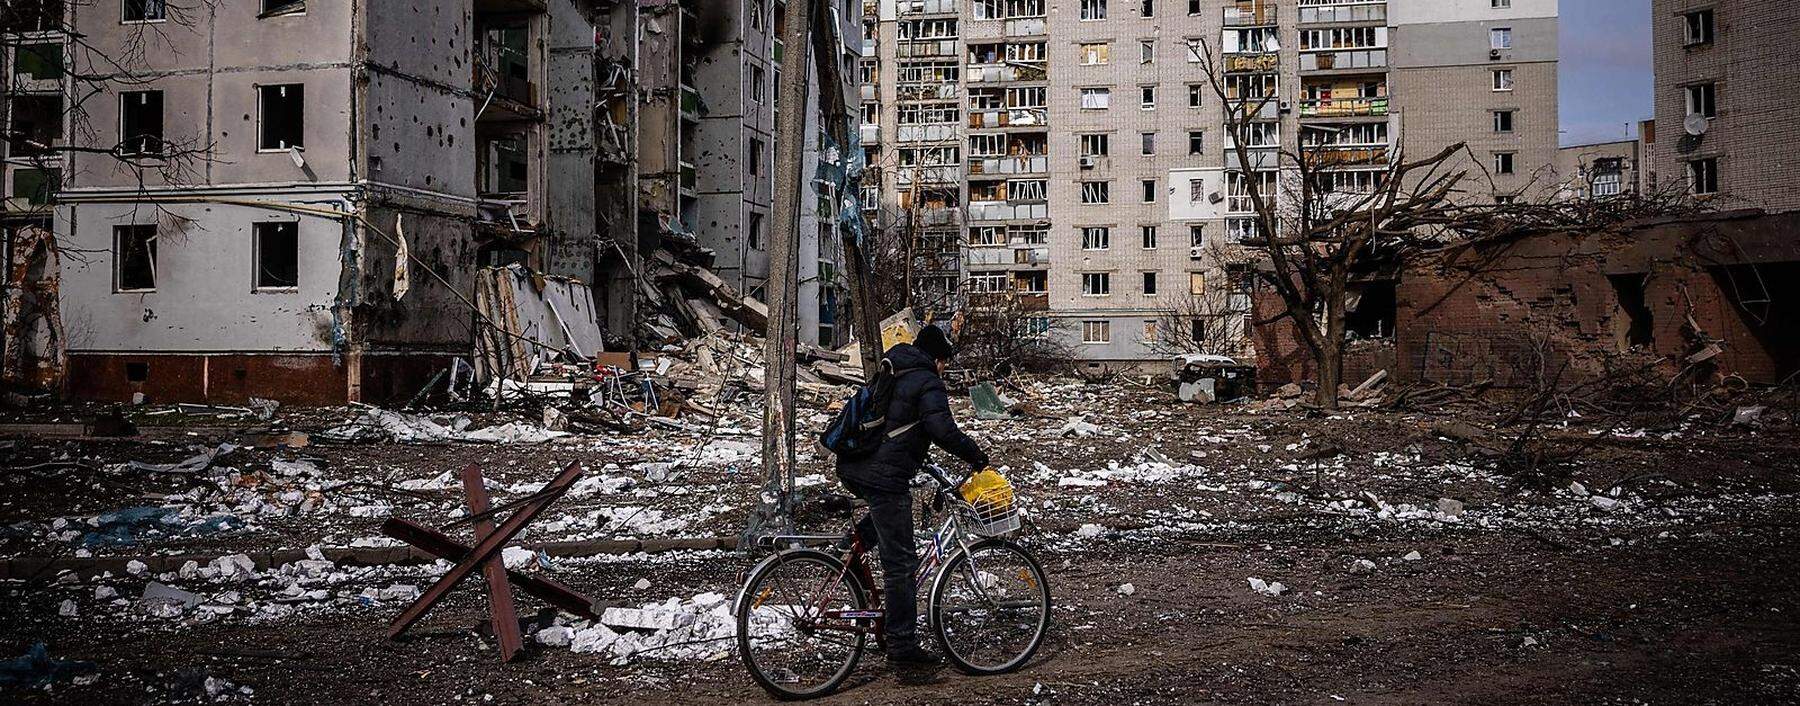 Ein Bild aus der von russischen Angriffen schwer getroffenen nordukrainischen Stadt Tschernihiw.